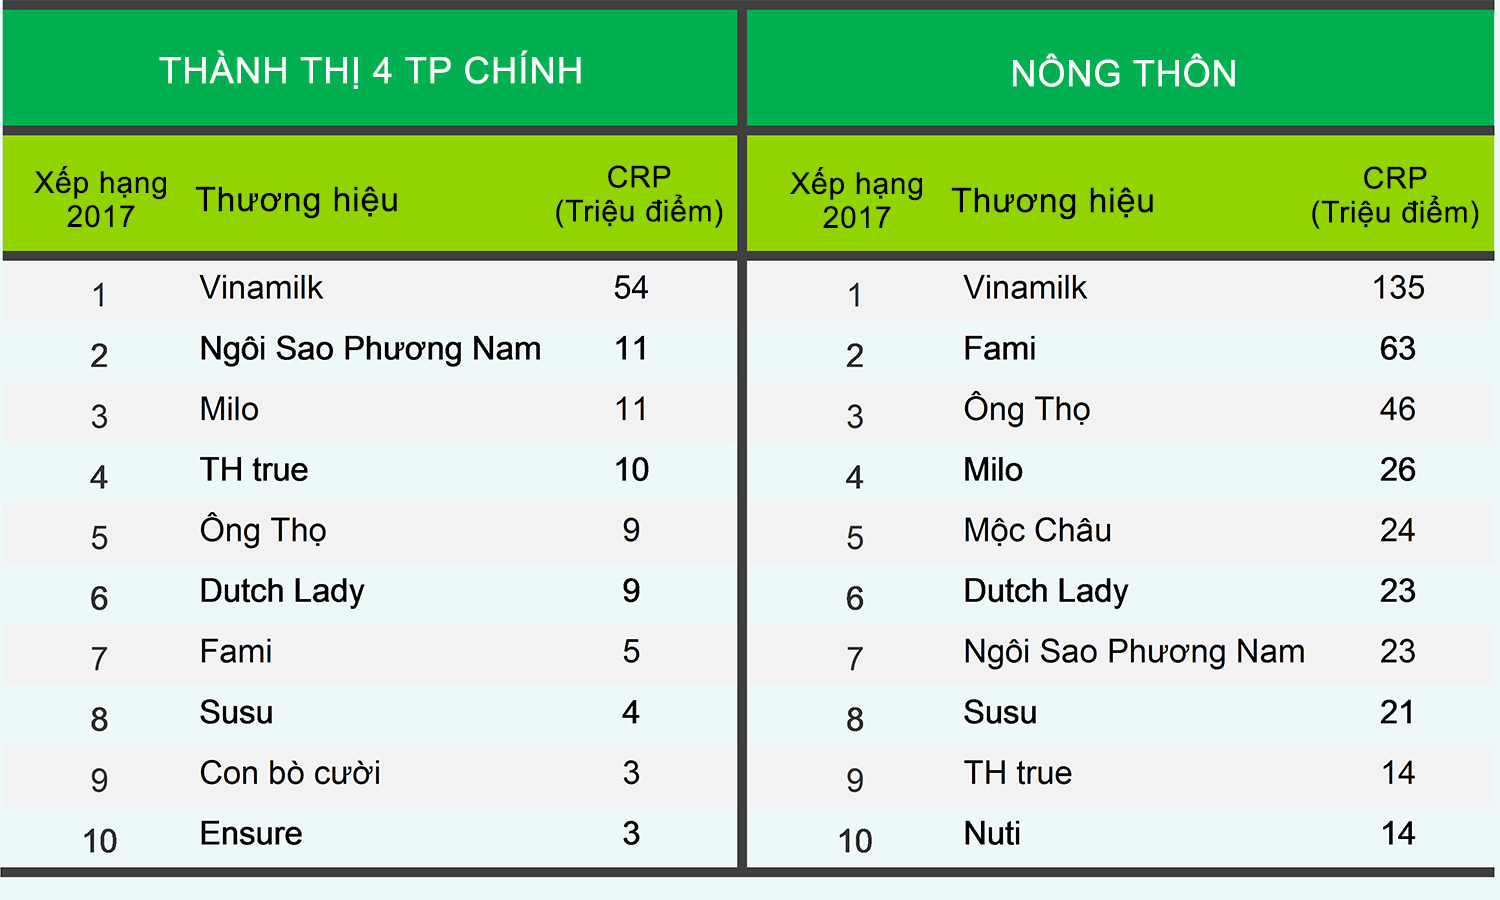 Vinamilk - Thương hiệu được lựa chọn nhiều nhất tại Việt Nam